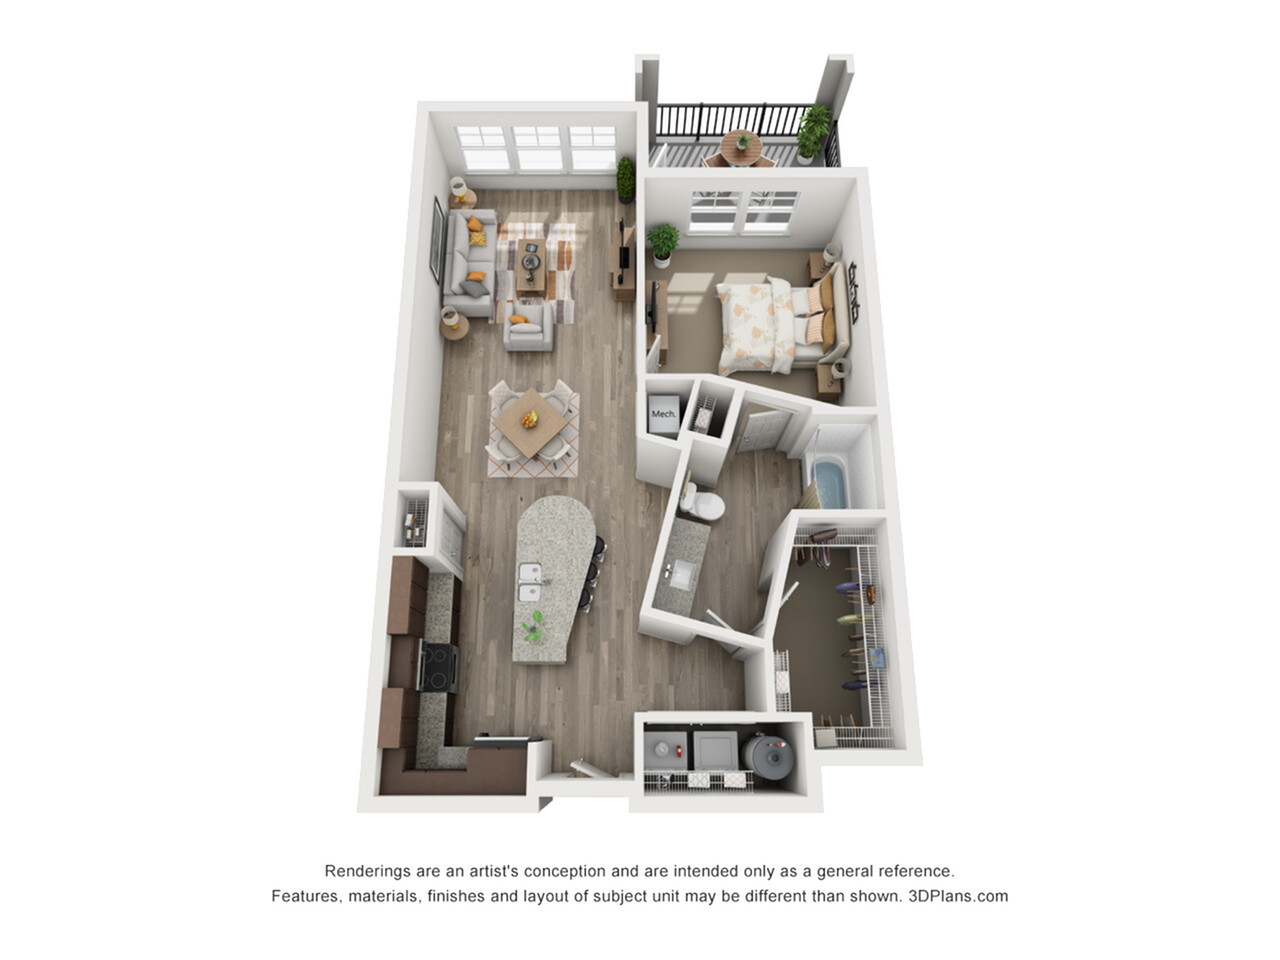 A2 - 1 bedroom, 1 bathroom apartment at Champions Vue Apartments